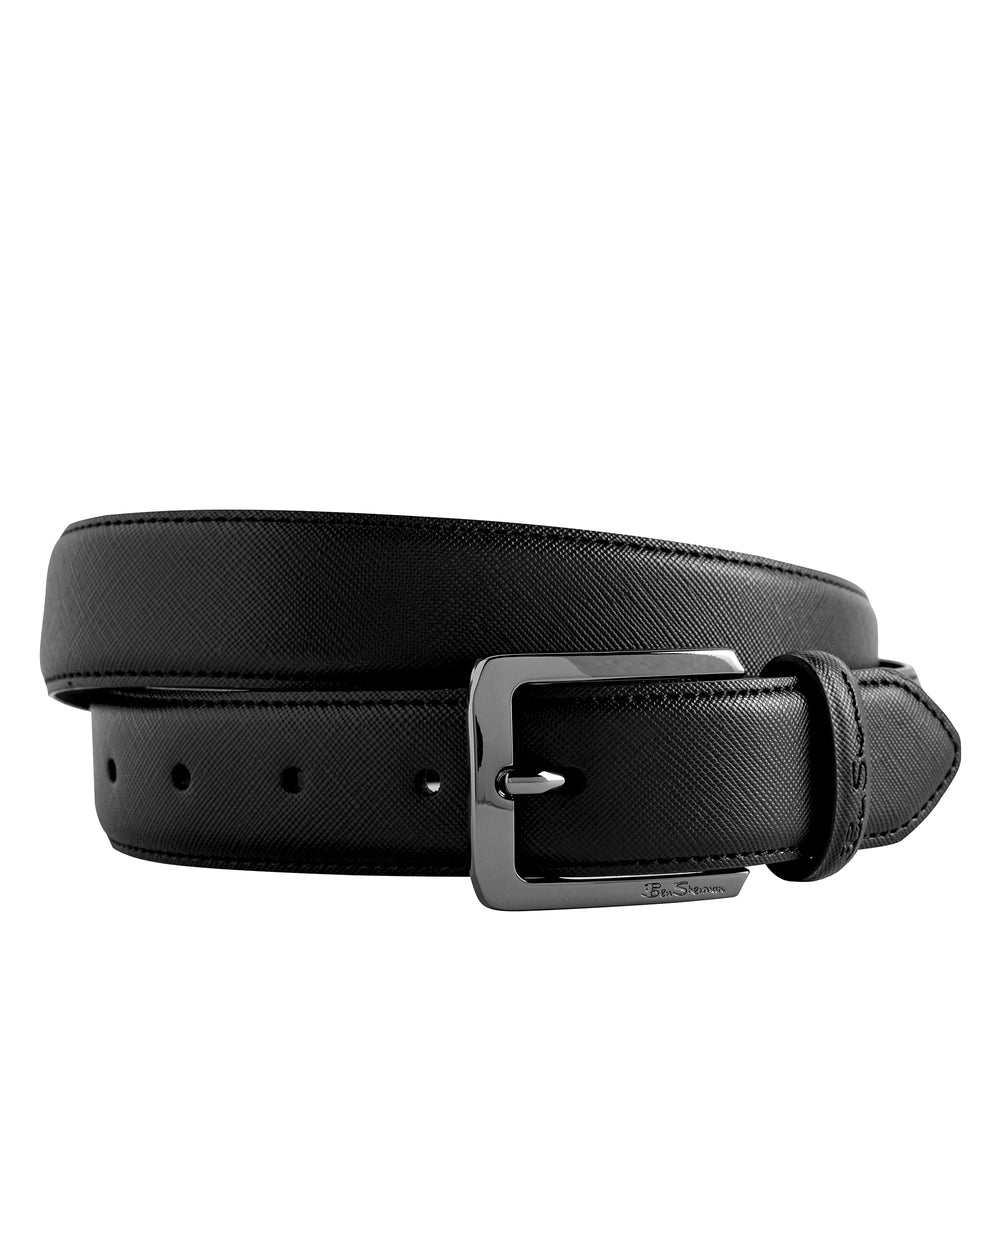 Bowen Leather Dress Belt - Black - Ben Sherman